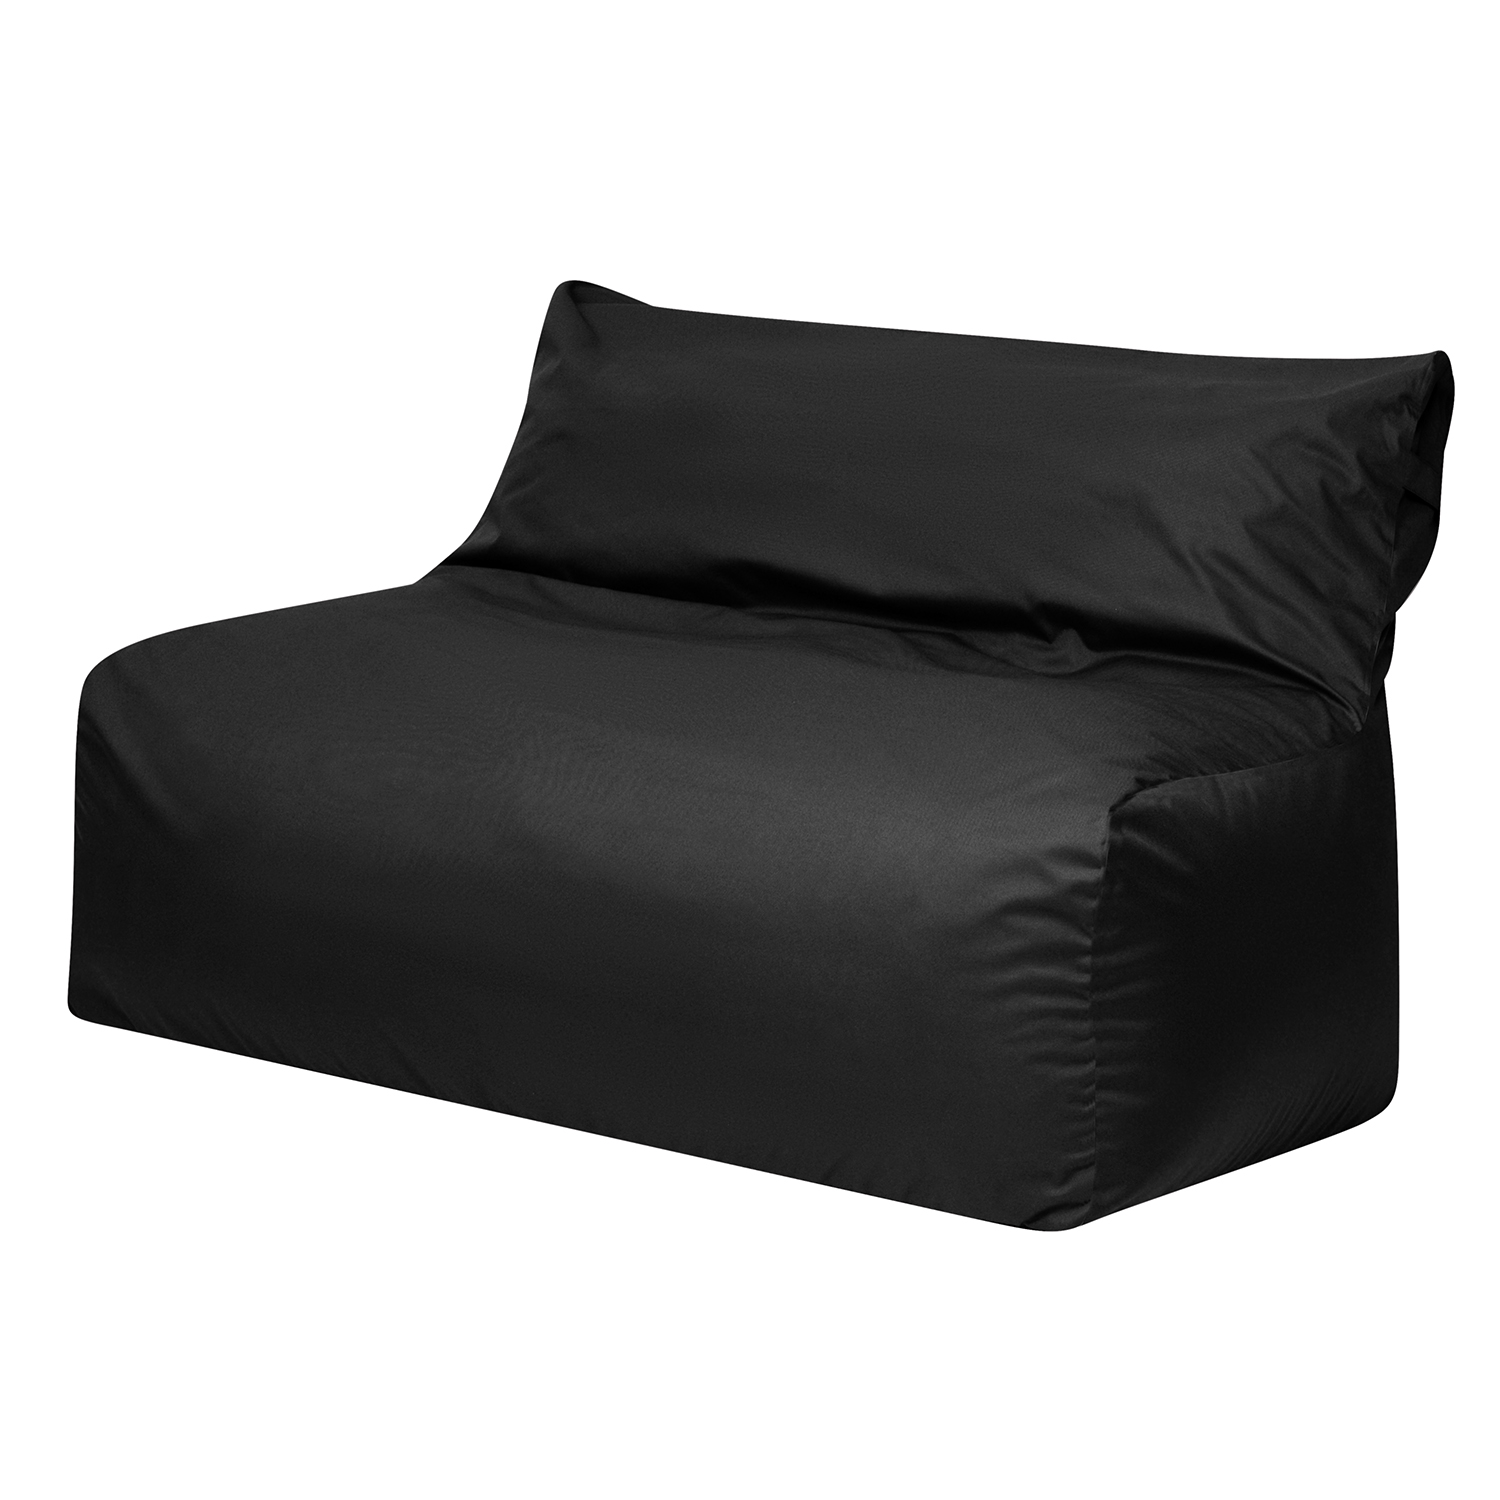 фото Бескаркасный диван модерн черный экокожа, классический dreambag